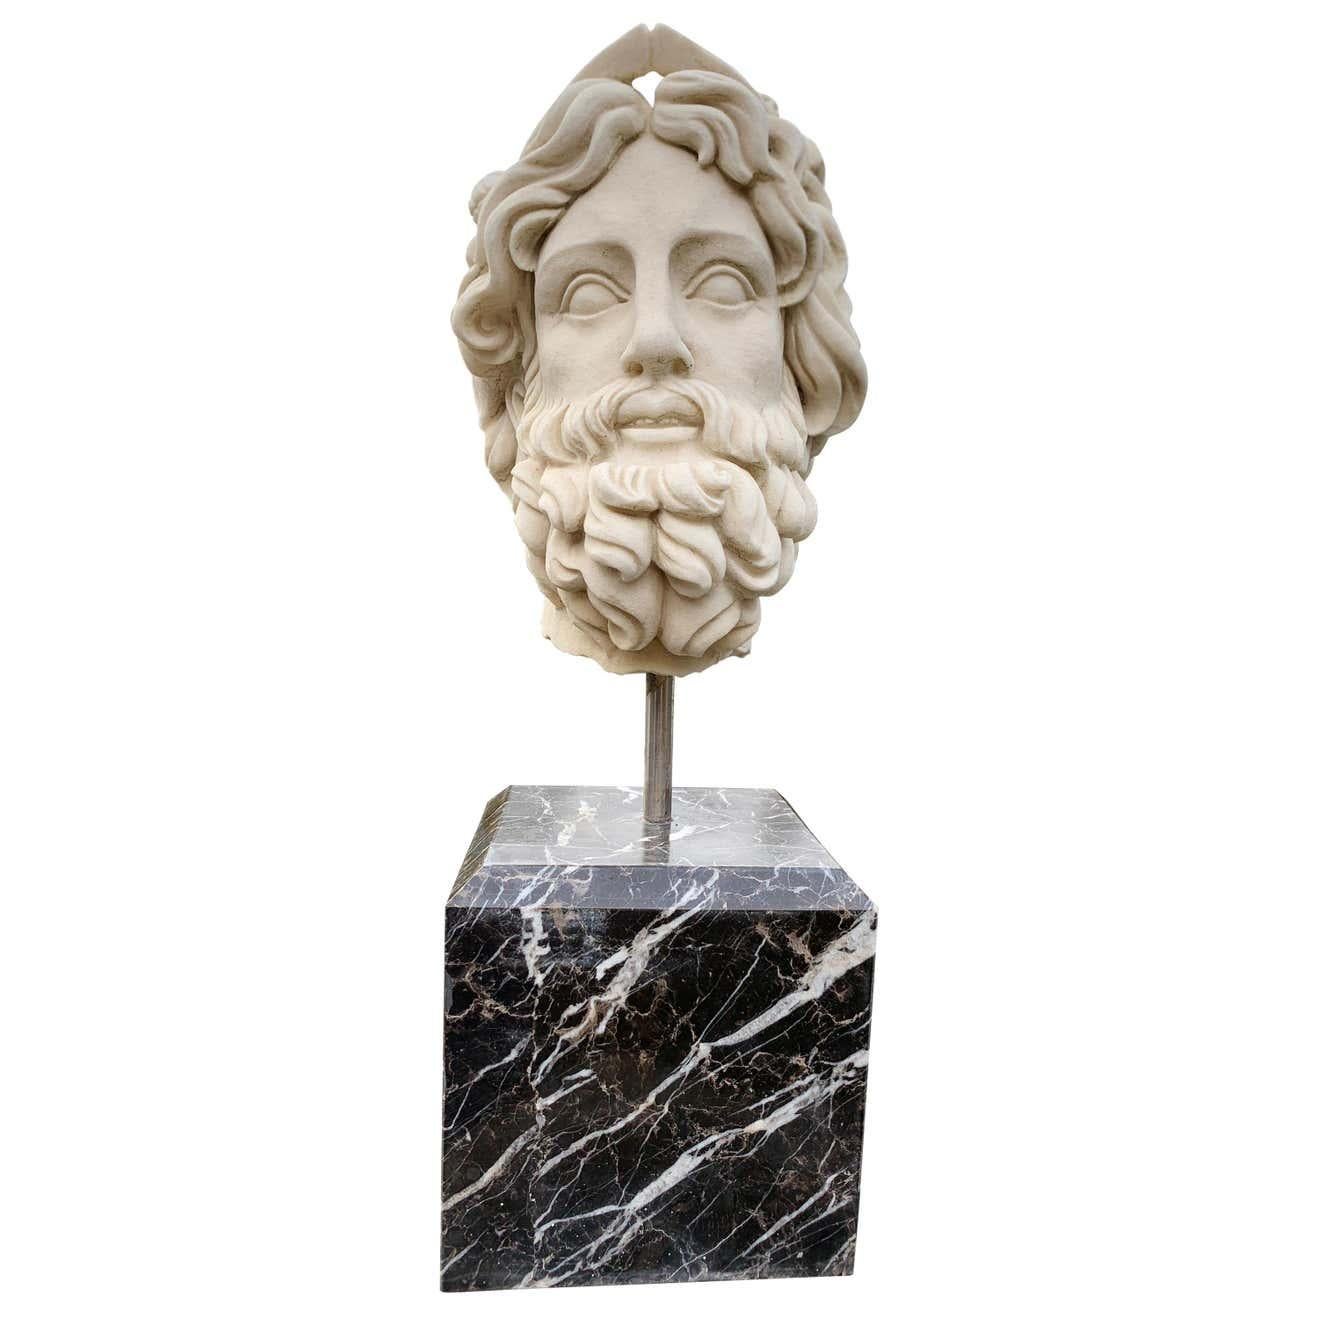 Magnifique buste en marbre du dieu romain de l'eau Neptune. Pièce magnifique reposant sur un socle en marbre noir. Nous l'avons représenté sur une colonne en marbre qui ne fait pas partie de la liste mais qui est disponible. Cette pièce est idéale